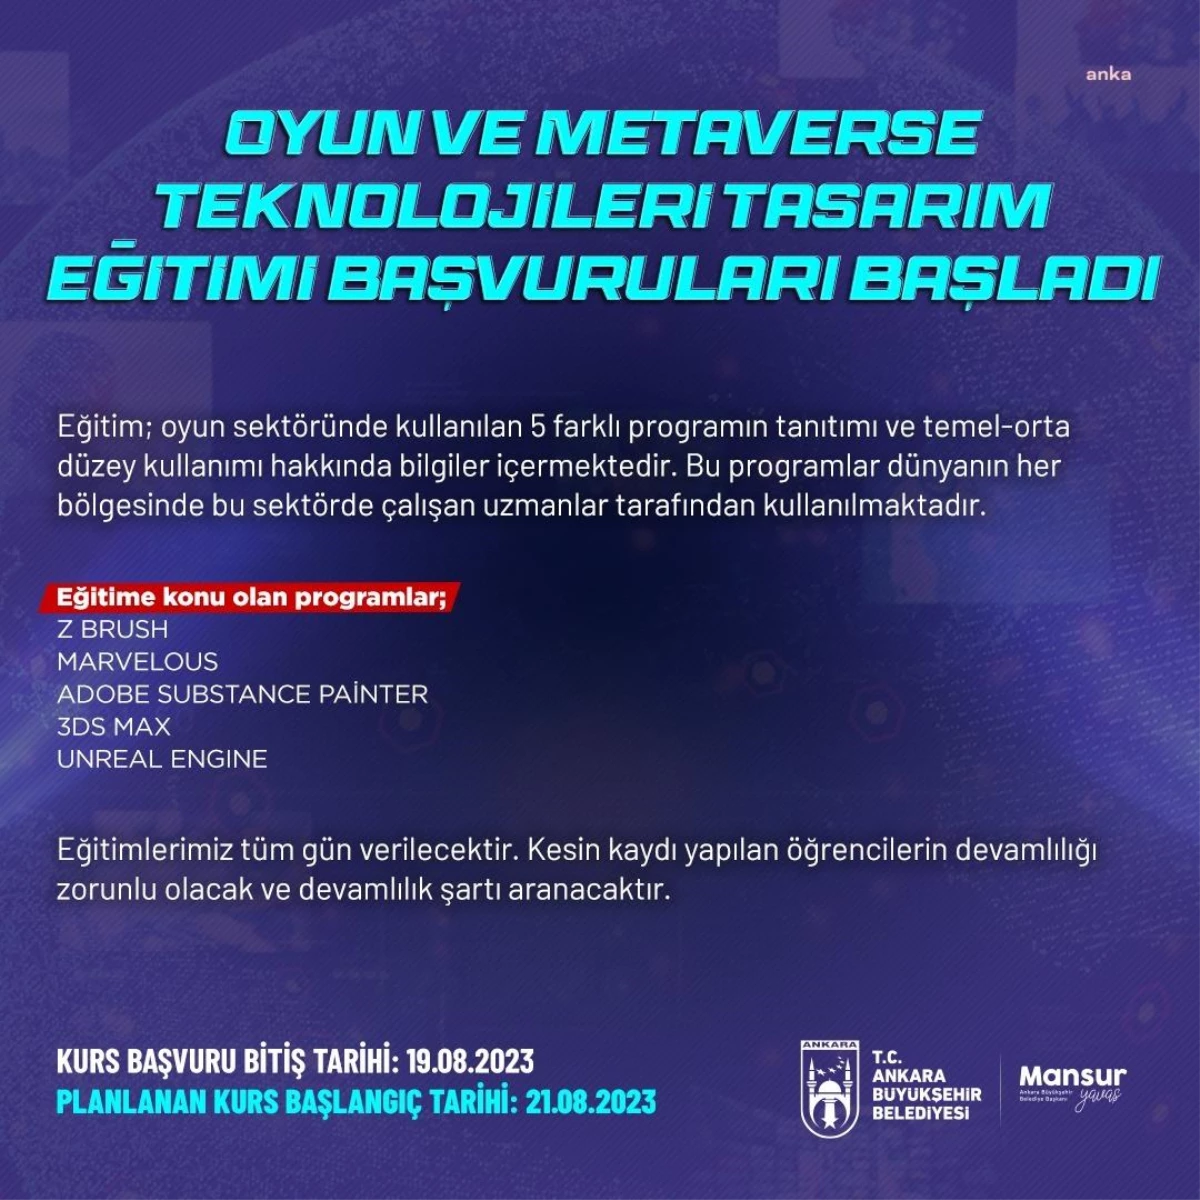 Ankara Büyükşehir Belediyesi Oyun ve Metaverse Teknolojileri Tasarım Eğitimi Başlıyor